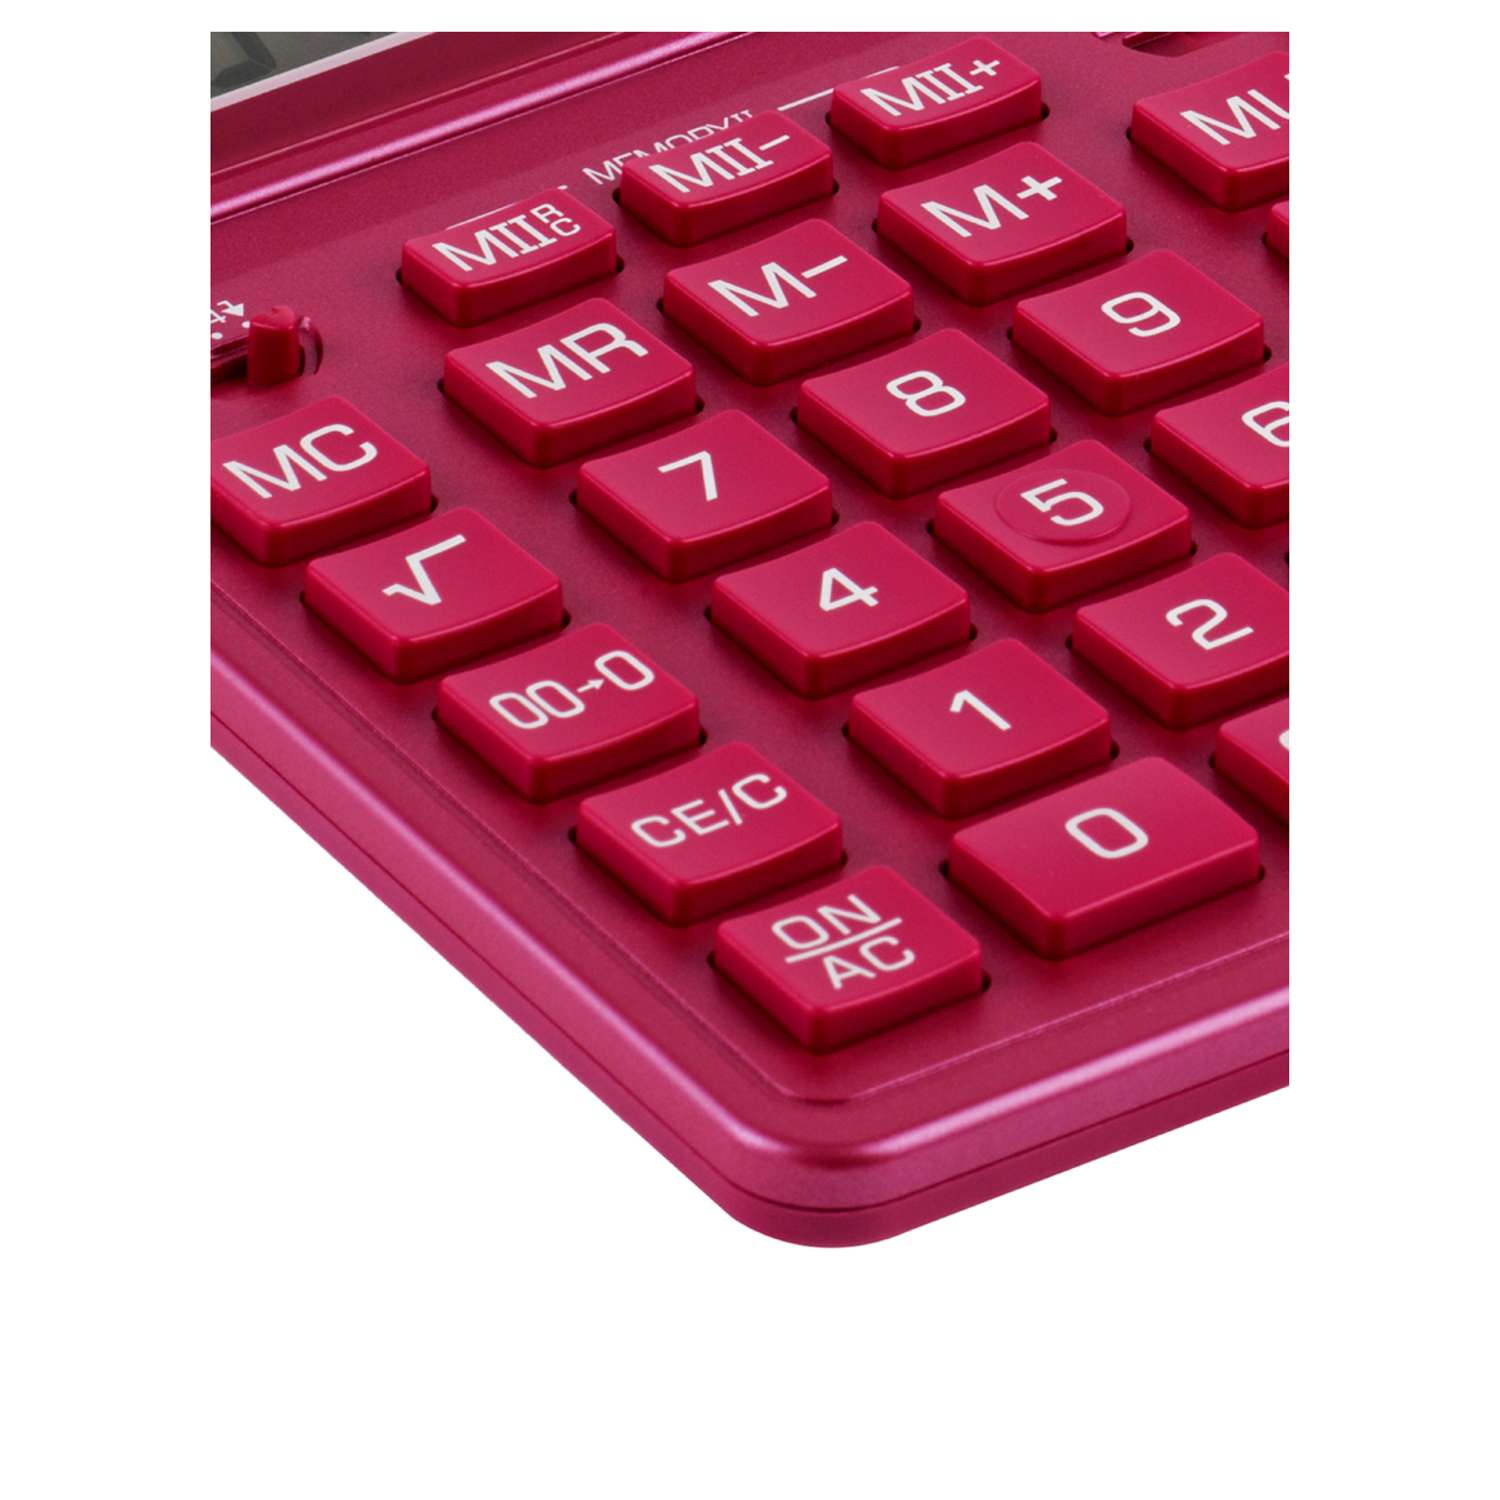 Калькулятор Eleven SDC-444X-PK 12 разрядов двойное питание 155*204*33мм розовый - фото 6